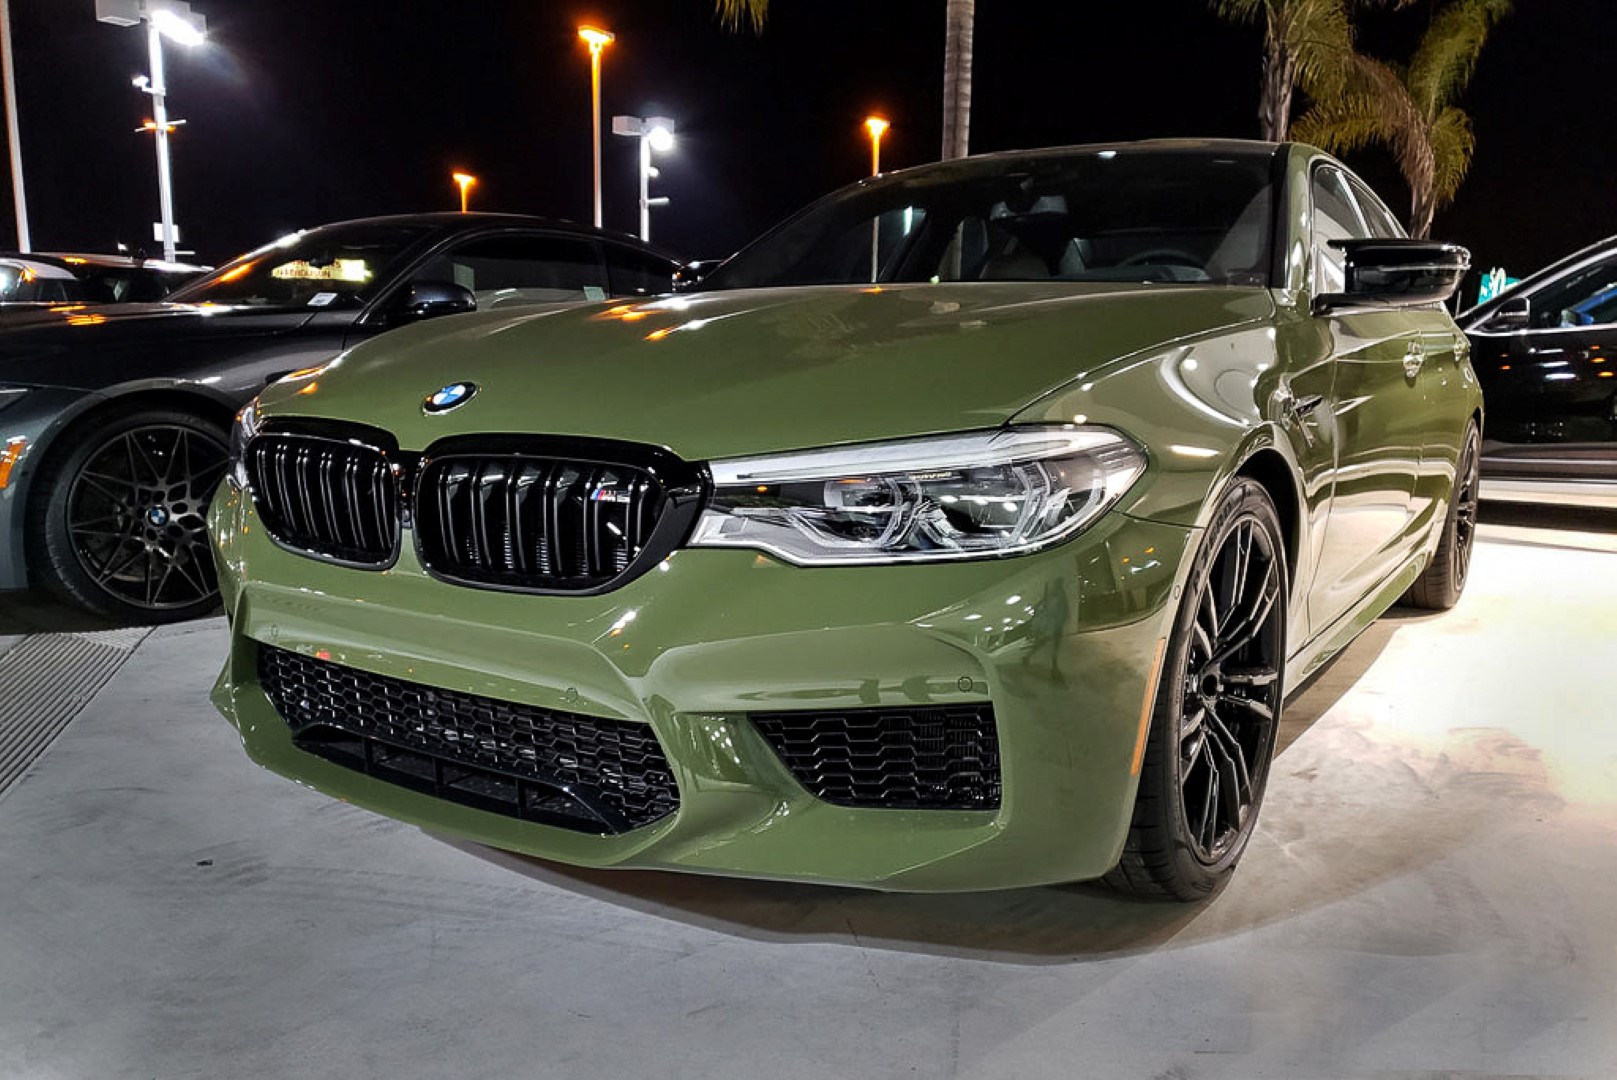 Зеленая м5. BMW m5 f90 Green. BMW m5 f90 Изумрудная. BMW m5 Urban Green. BMW m5 f90 Urban Green.